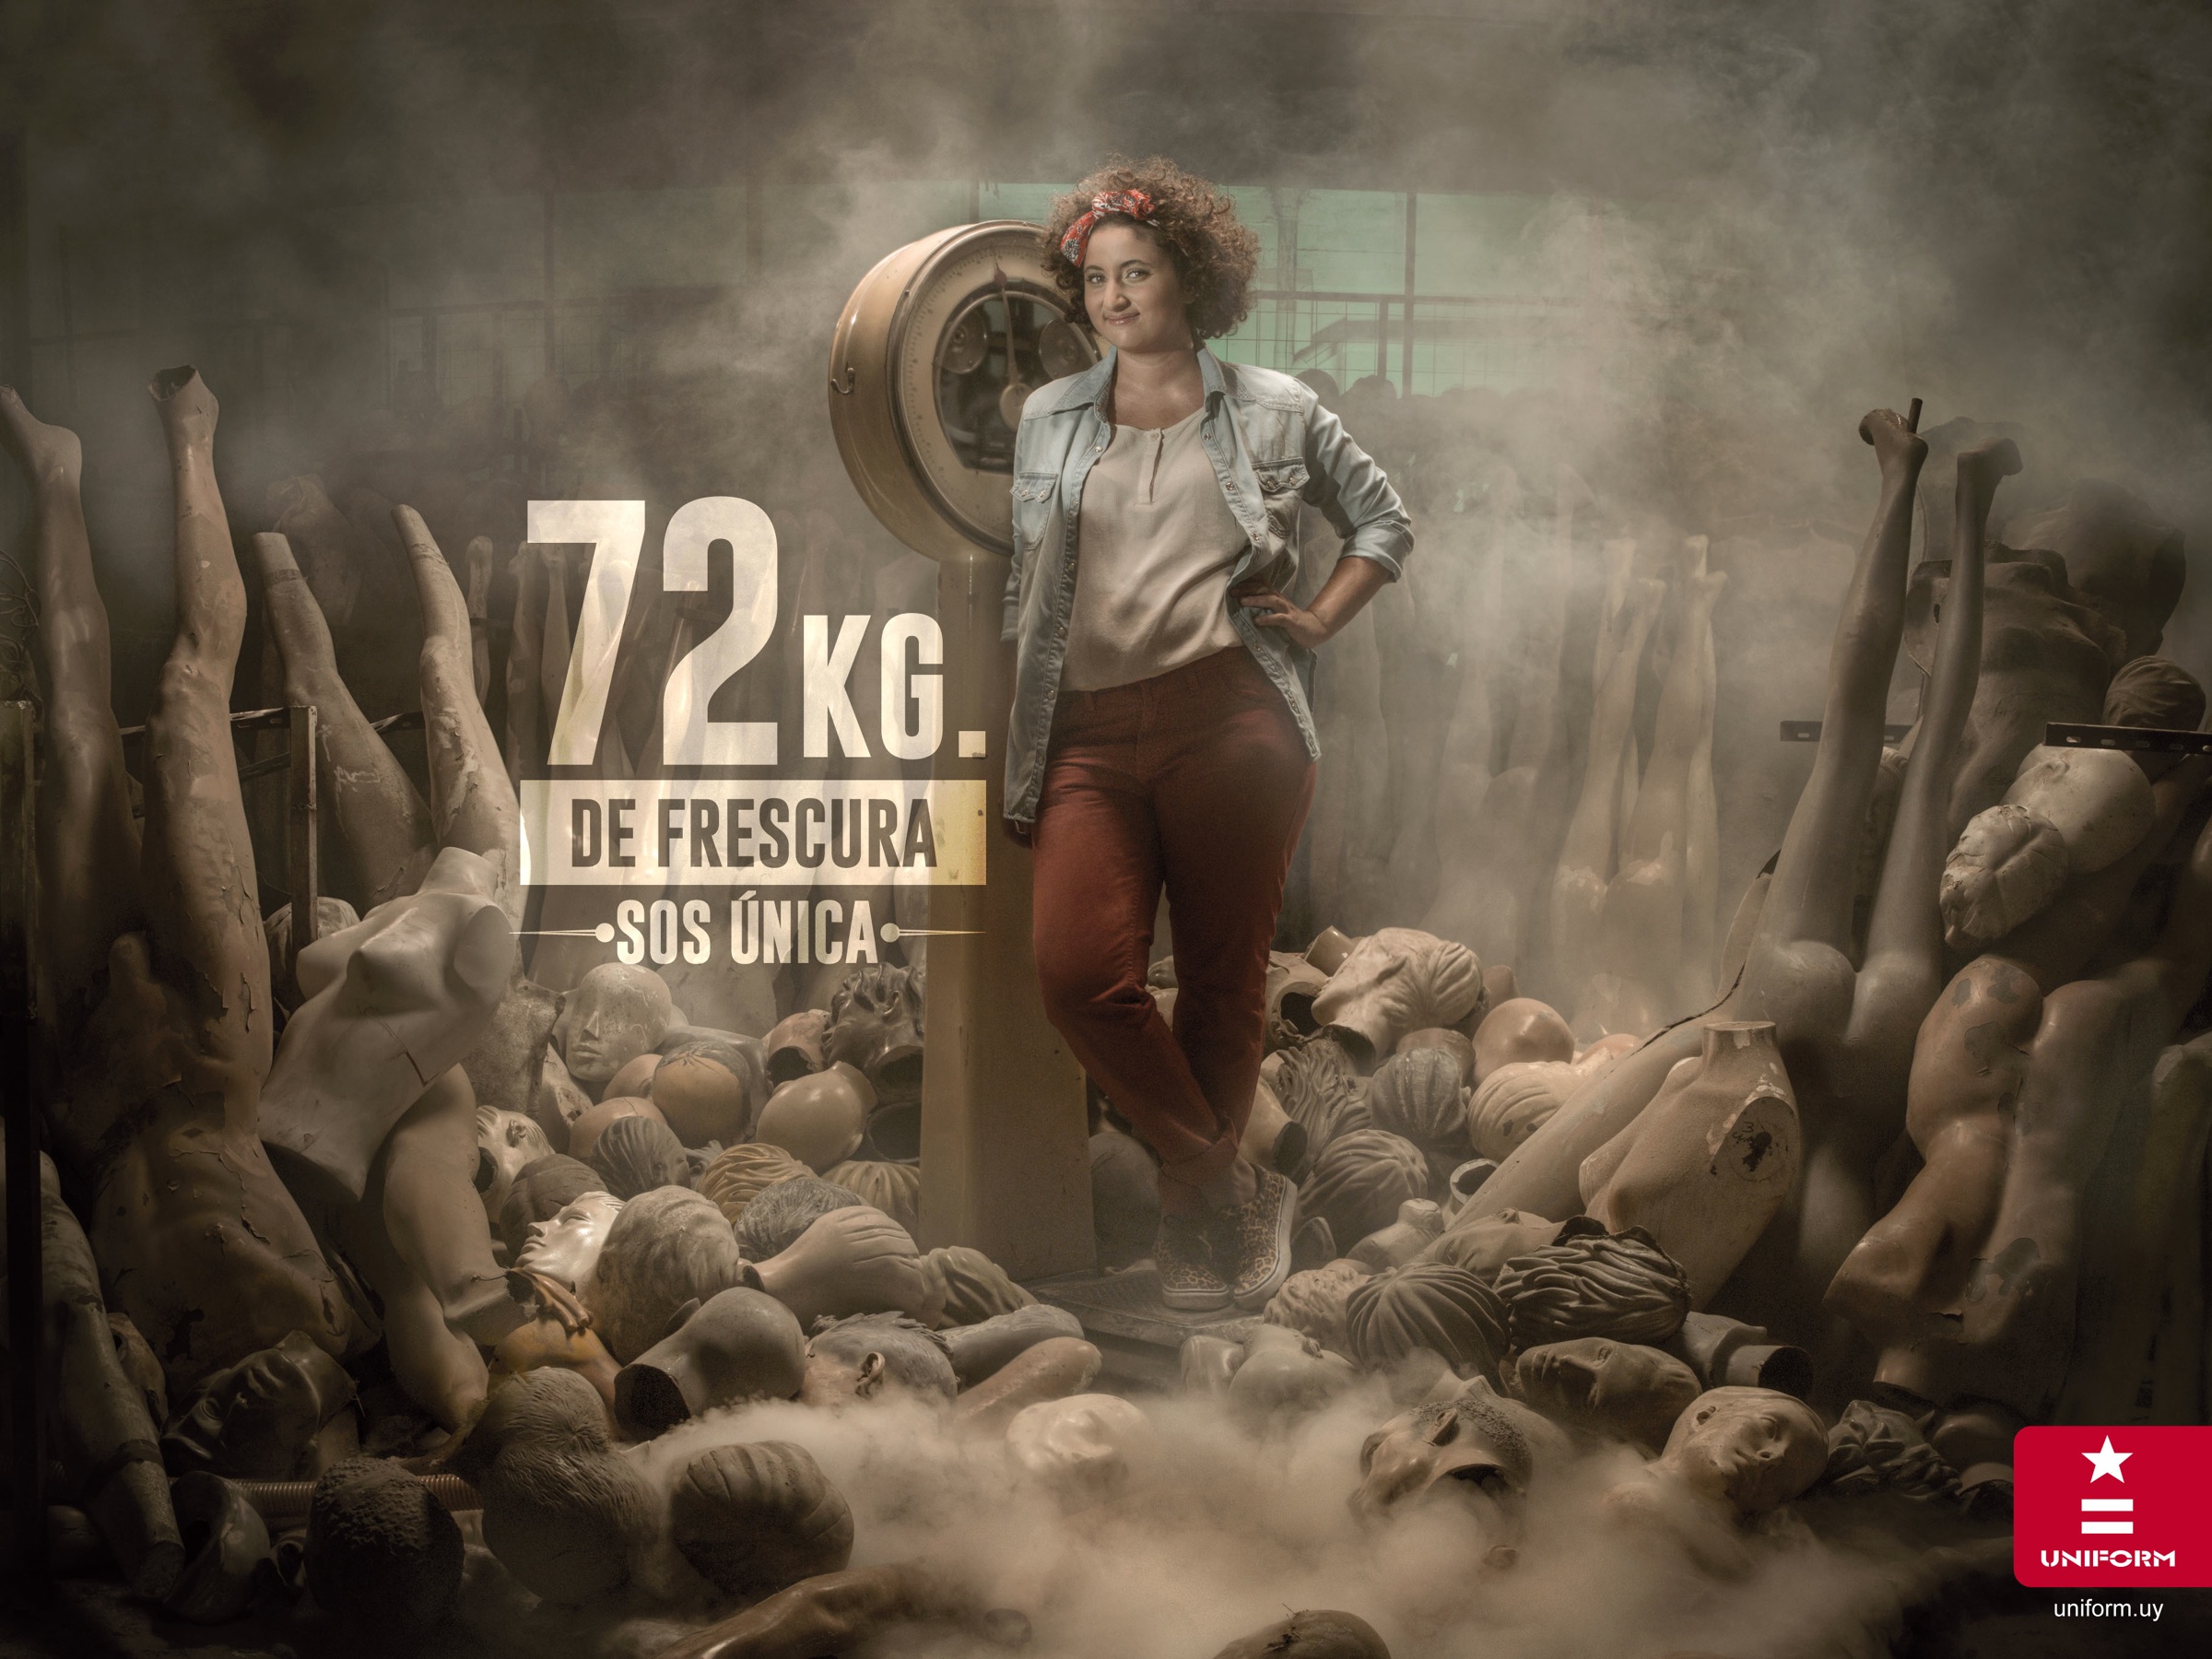 乌拉圭Uniform 时尚牛仔裤平面广告设计